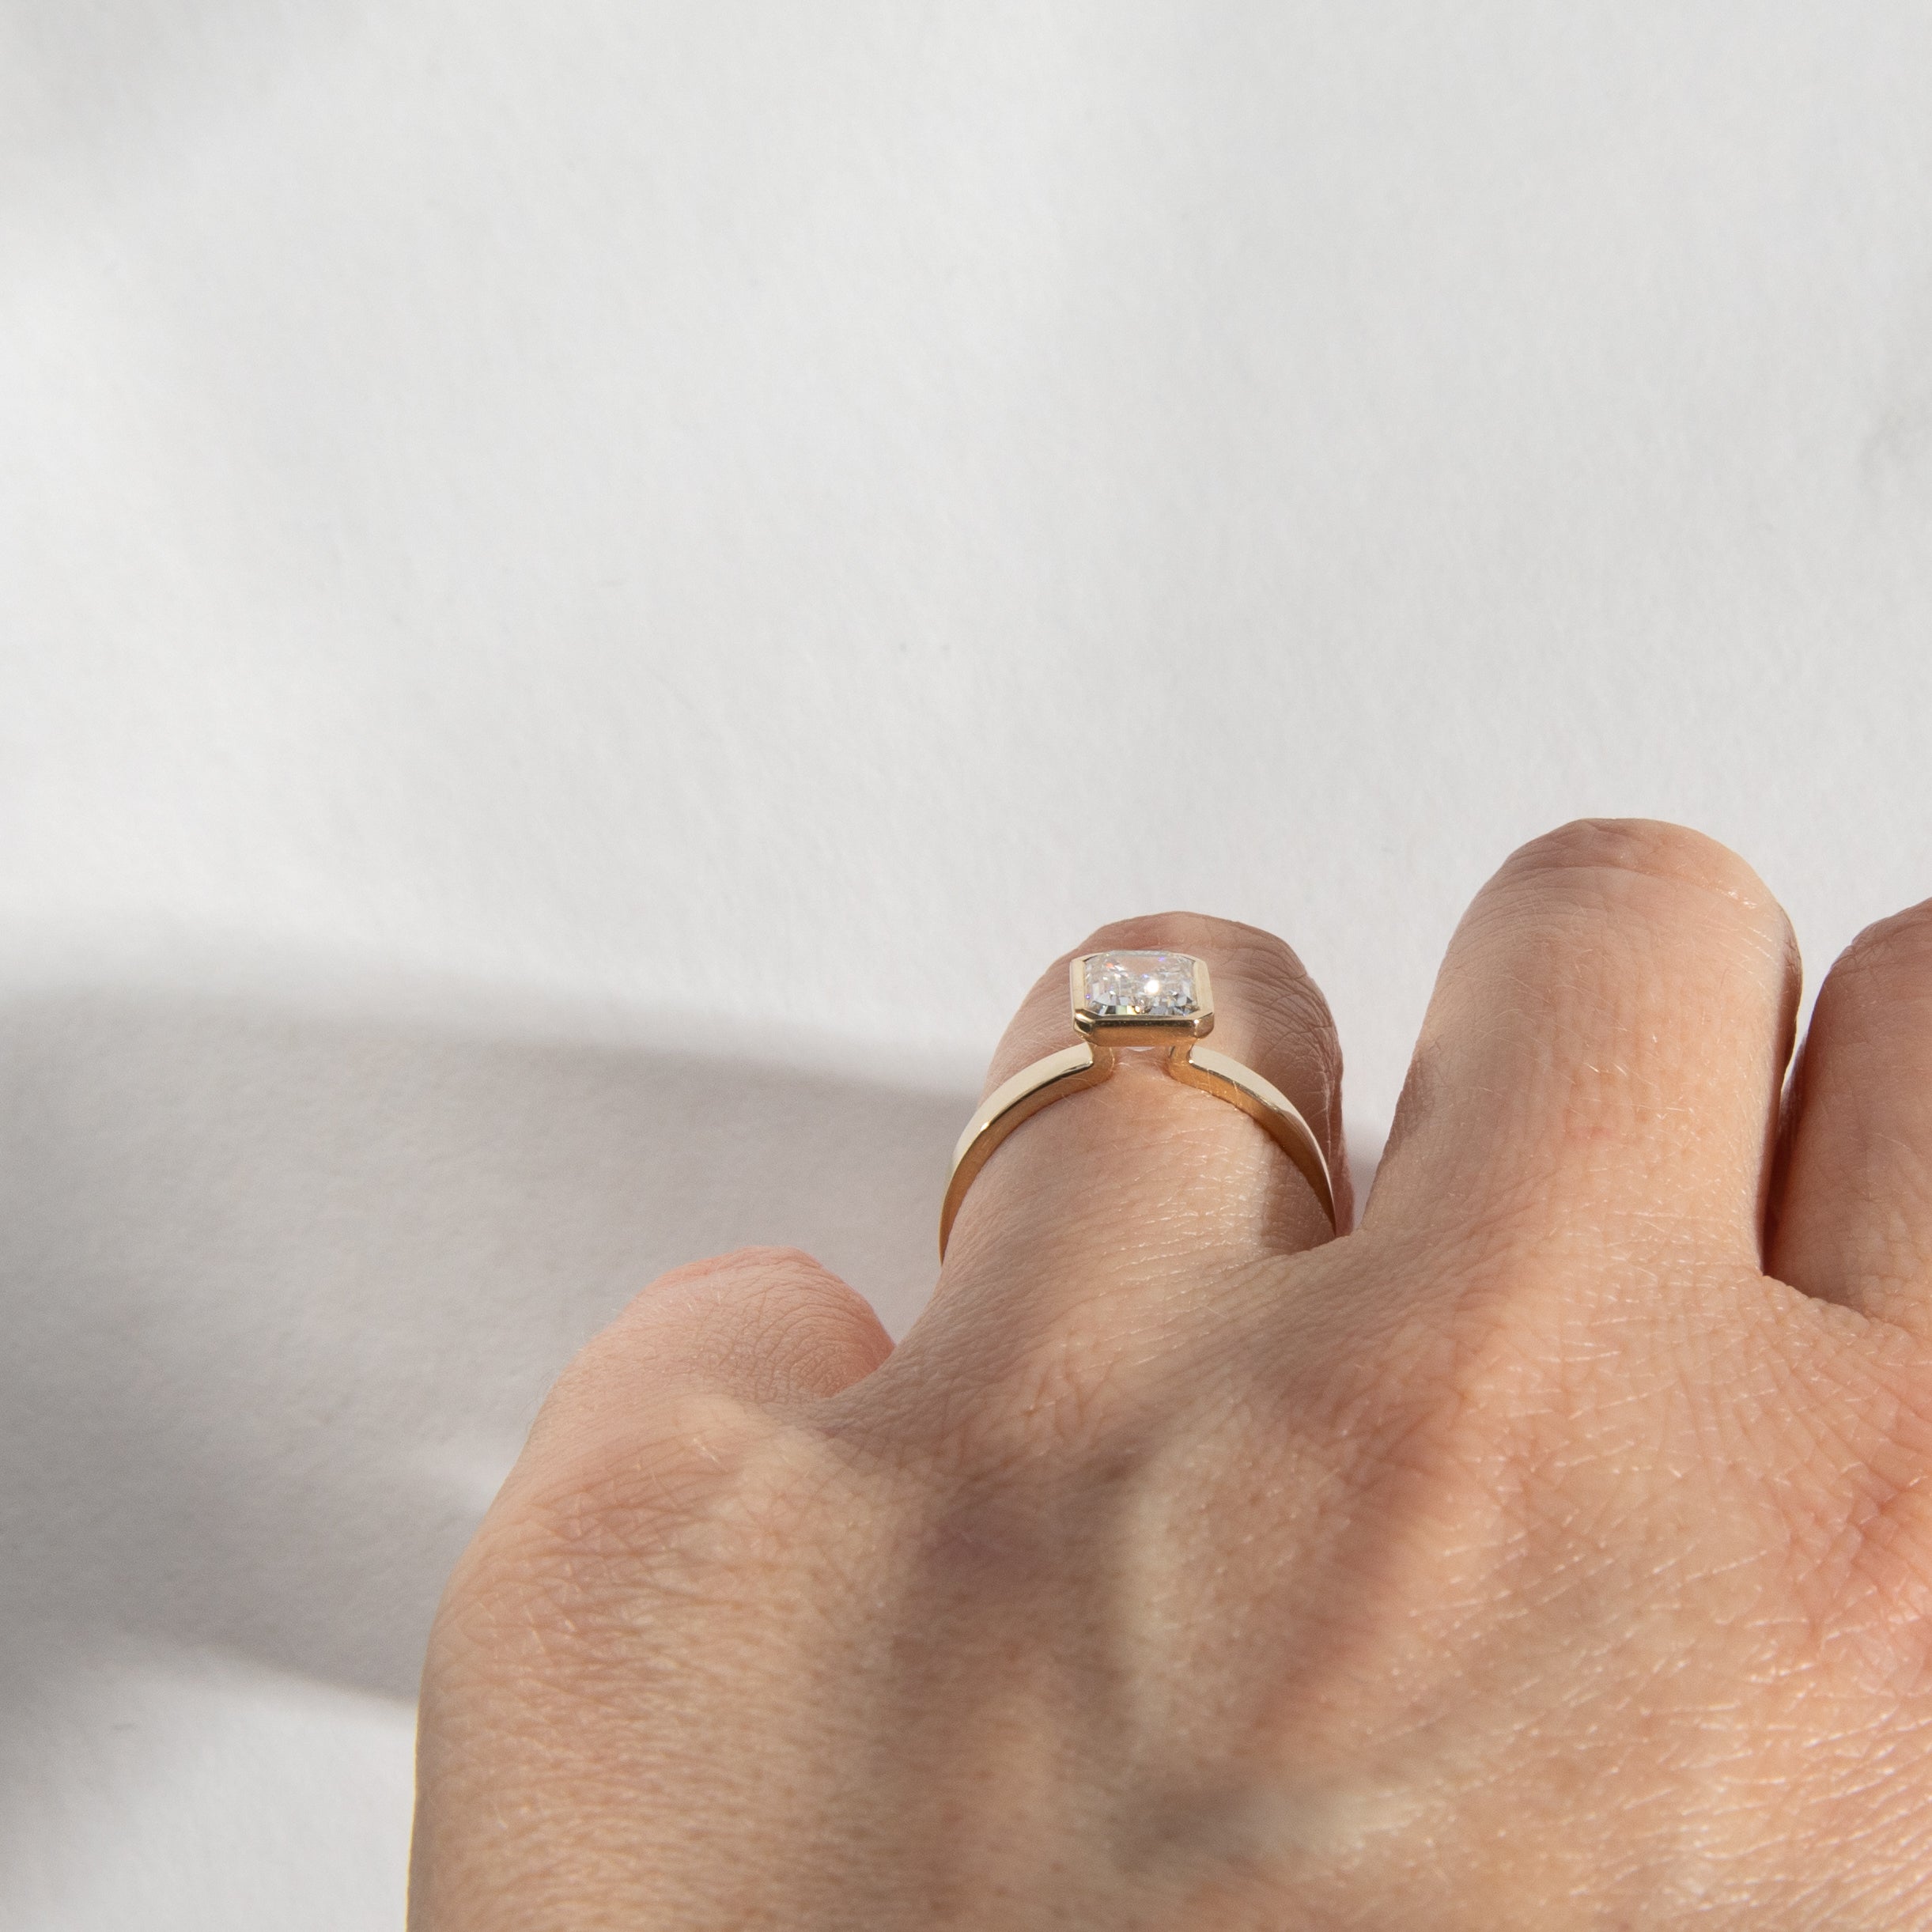 Badi Designer ring in 14k Yellow Gold set with a lab-grown diamond